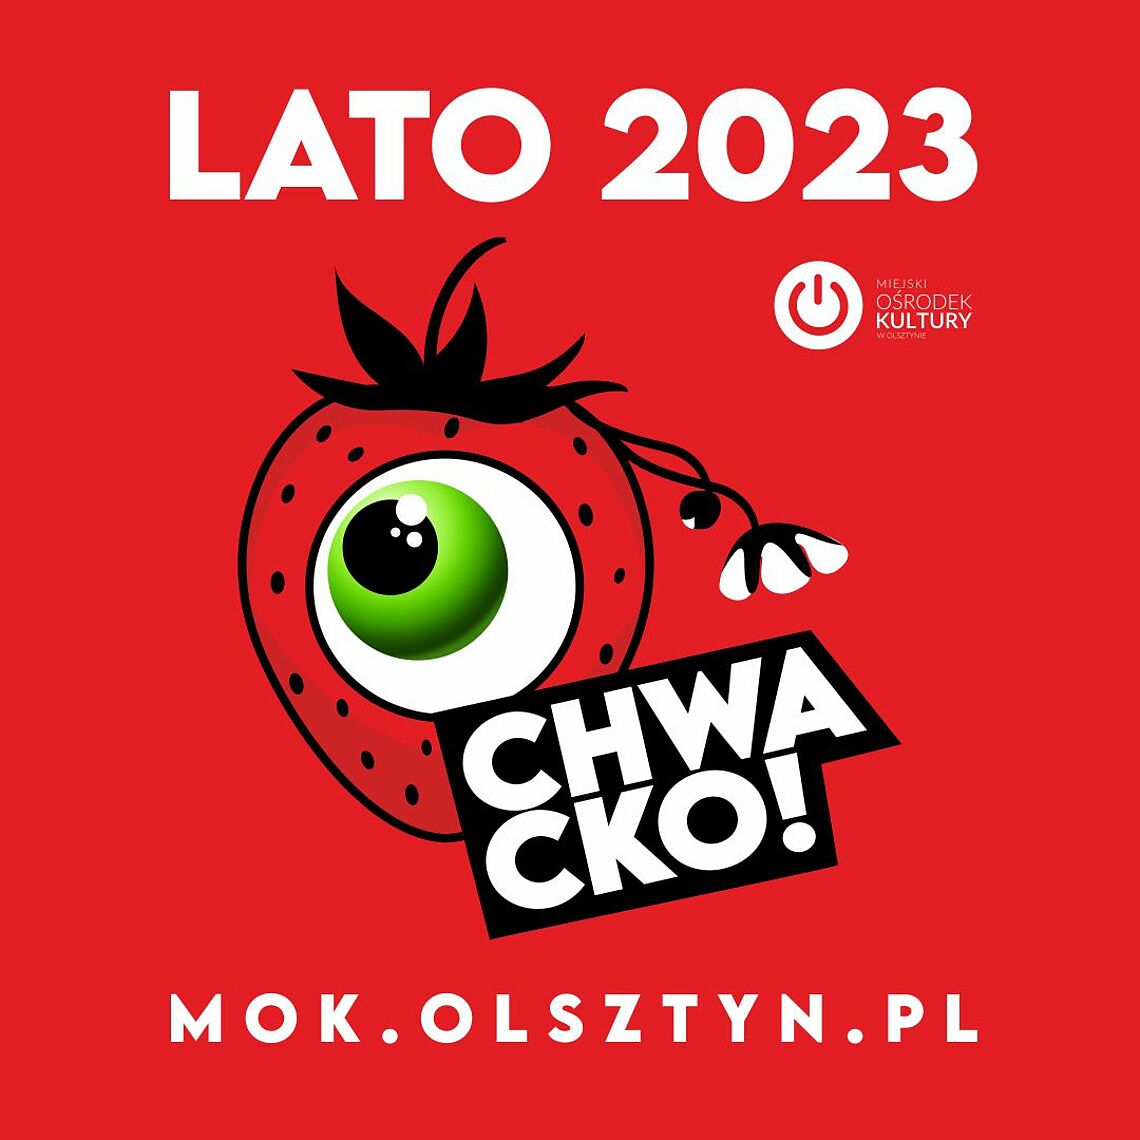 Plakat zapraszający w dniach 27-30 lipca 2023 r. do Olsztyna na cykliczną imprezę Dni Olsztyna 2023.